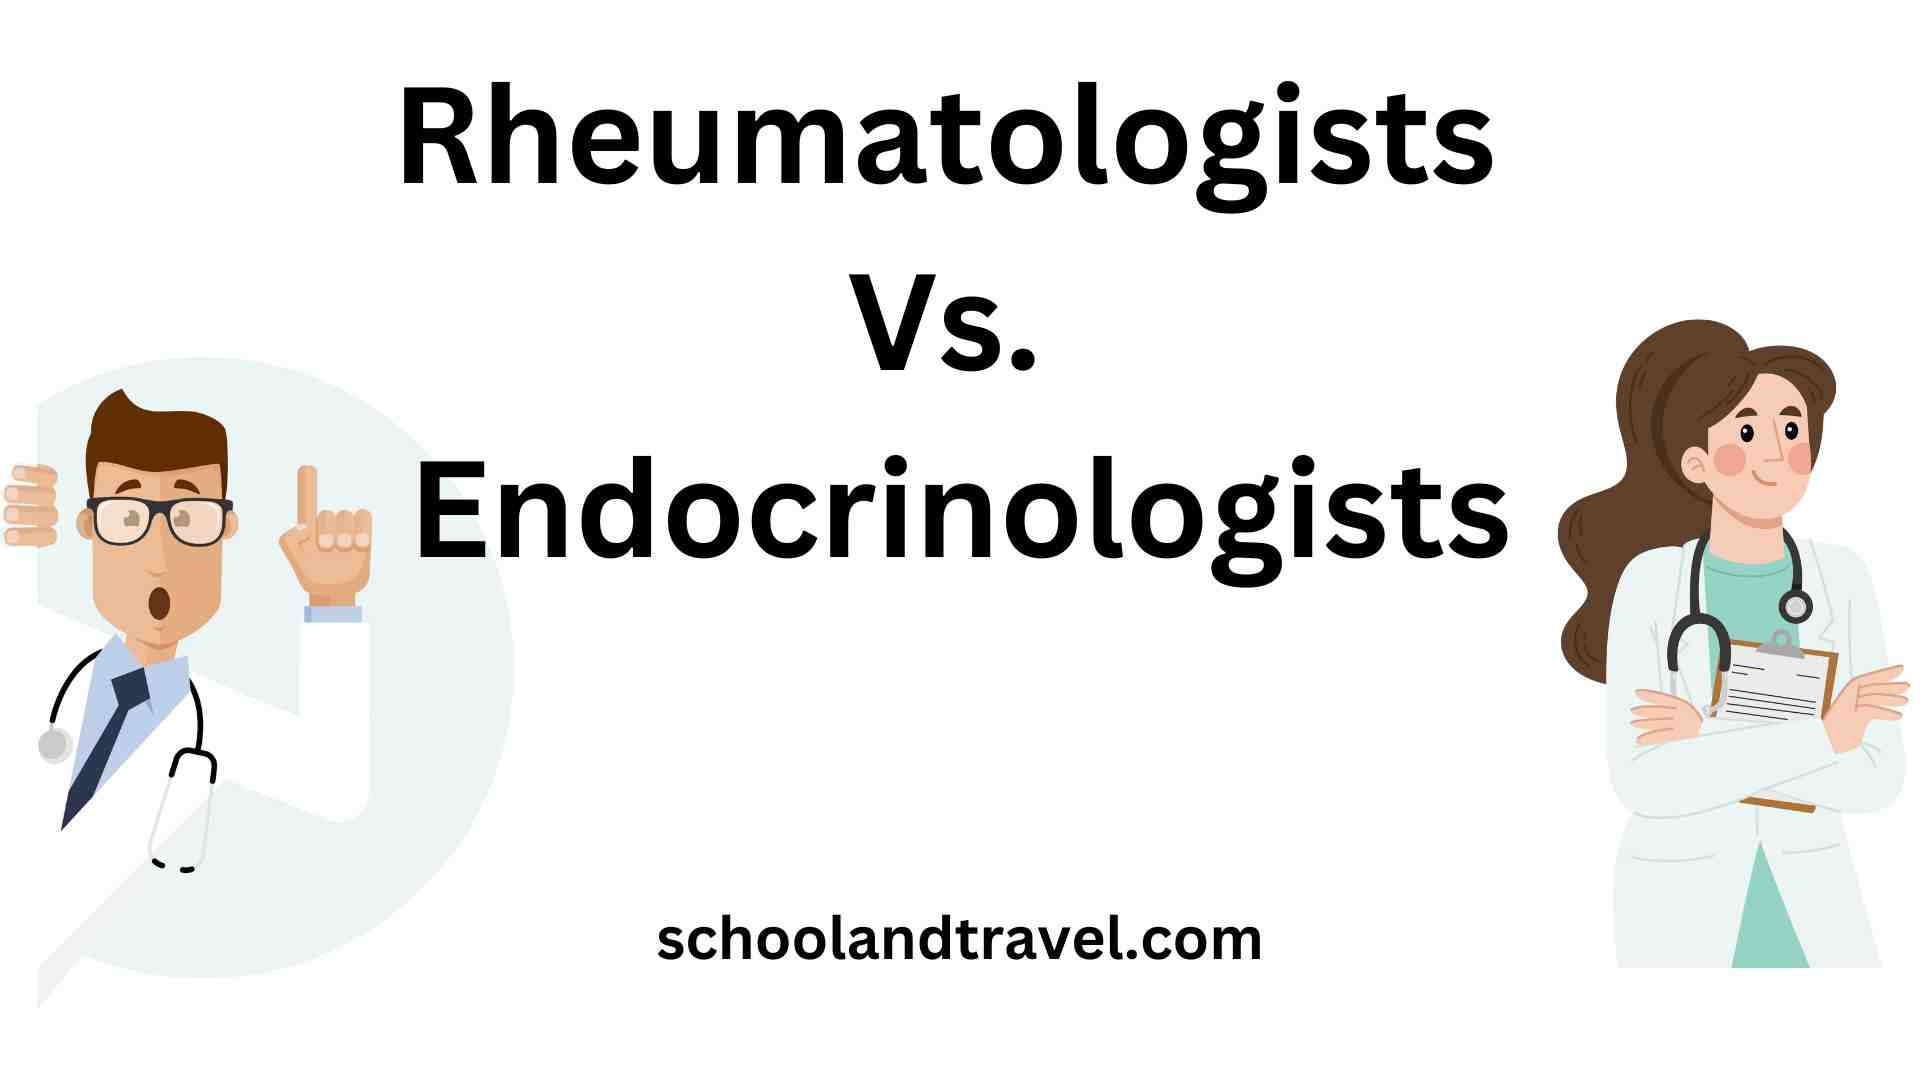 Rheumatologists Vs. Endocrinologists